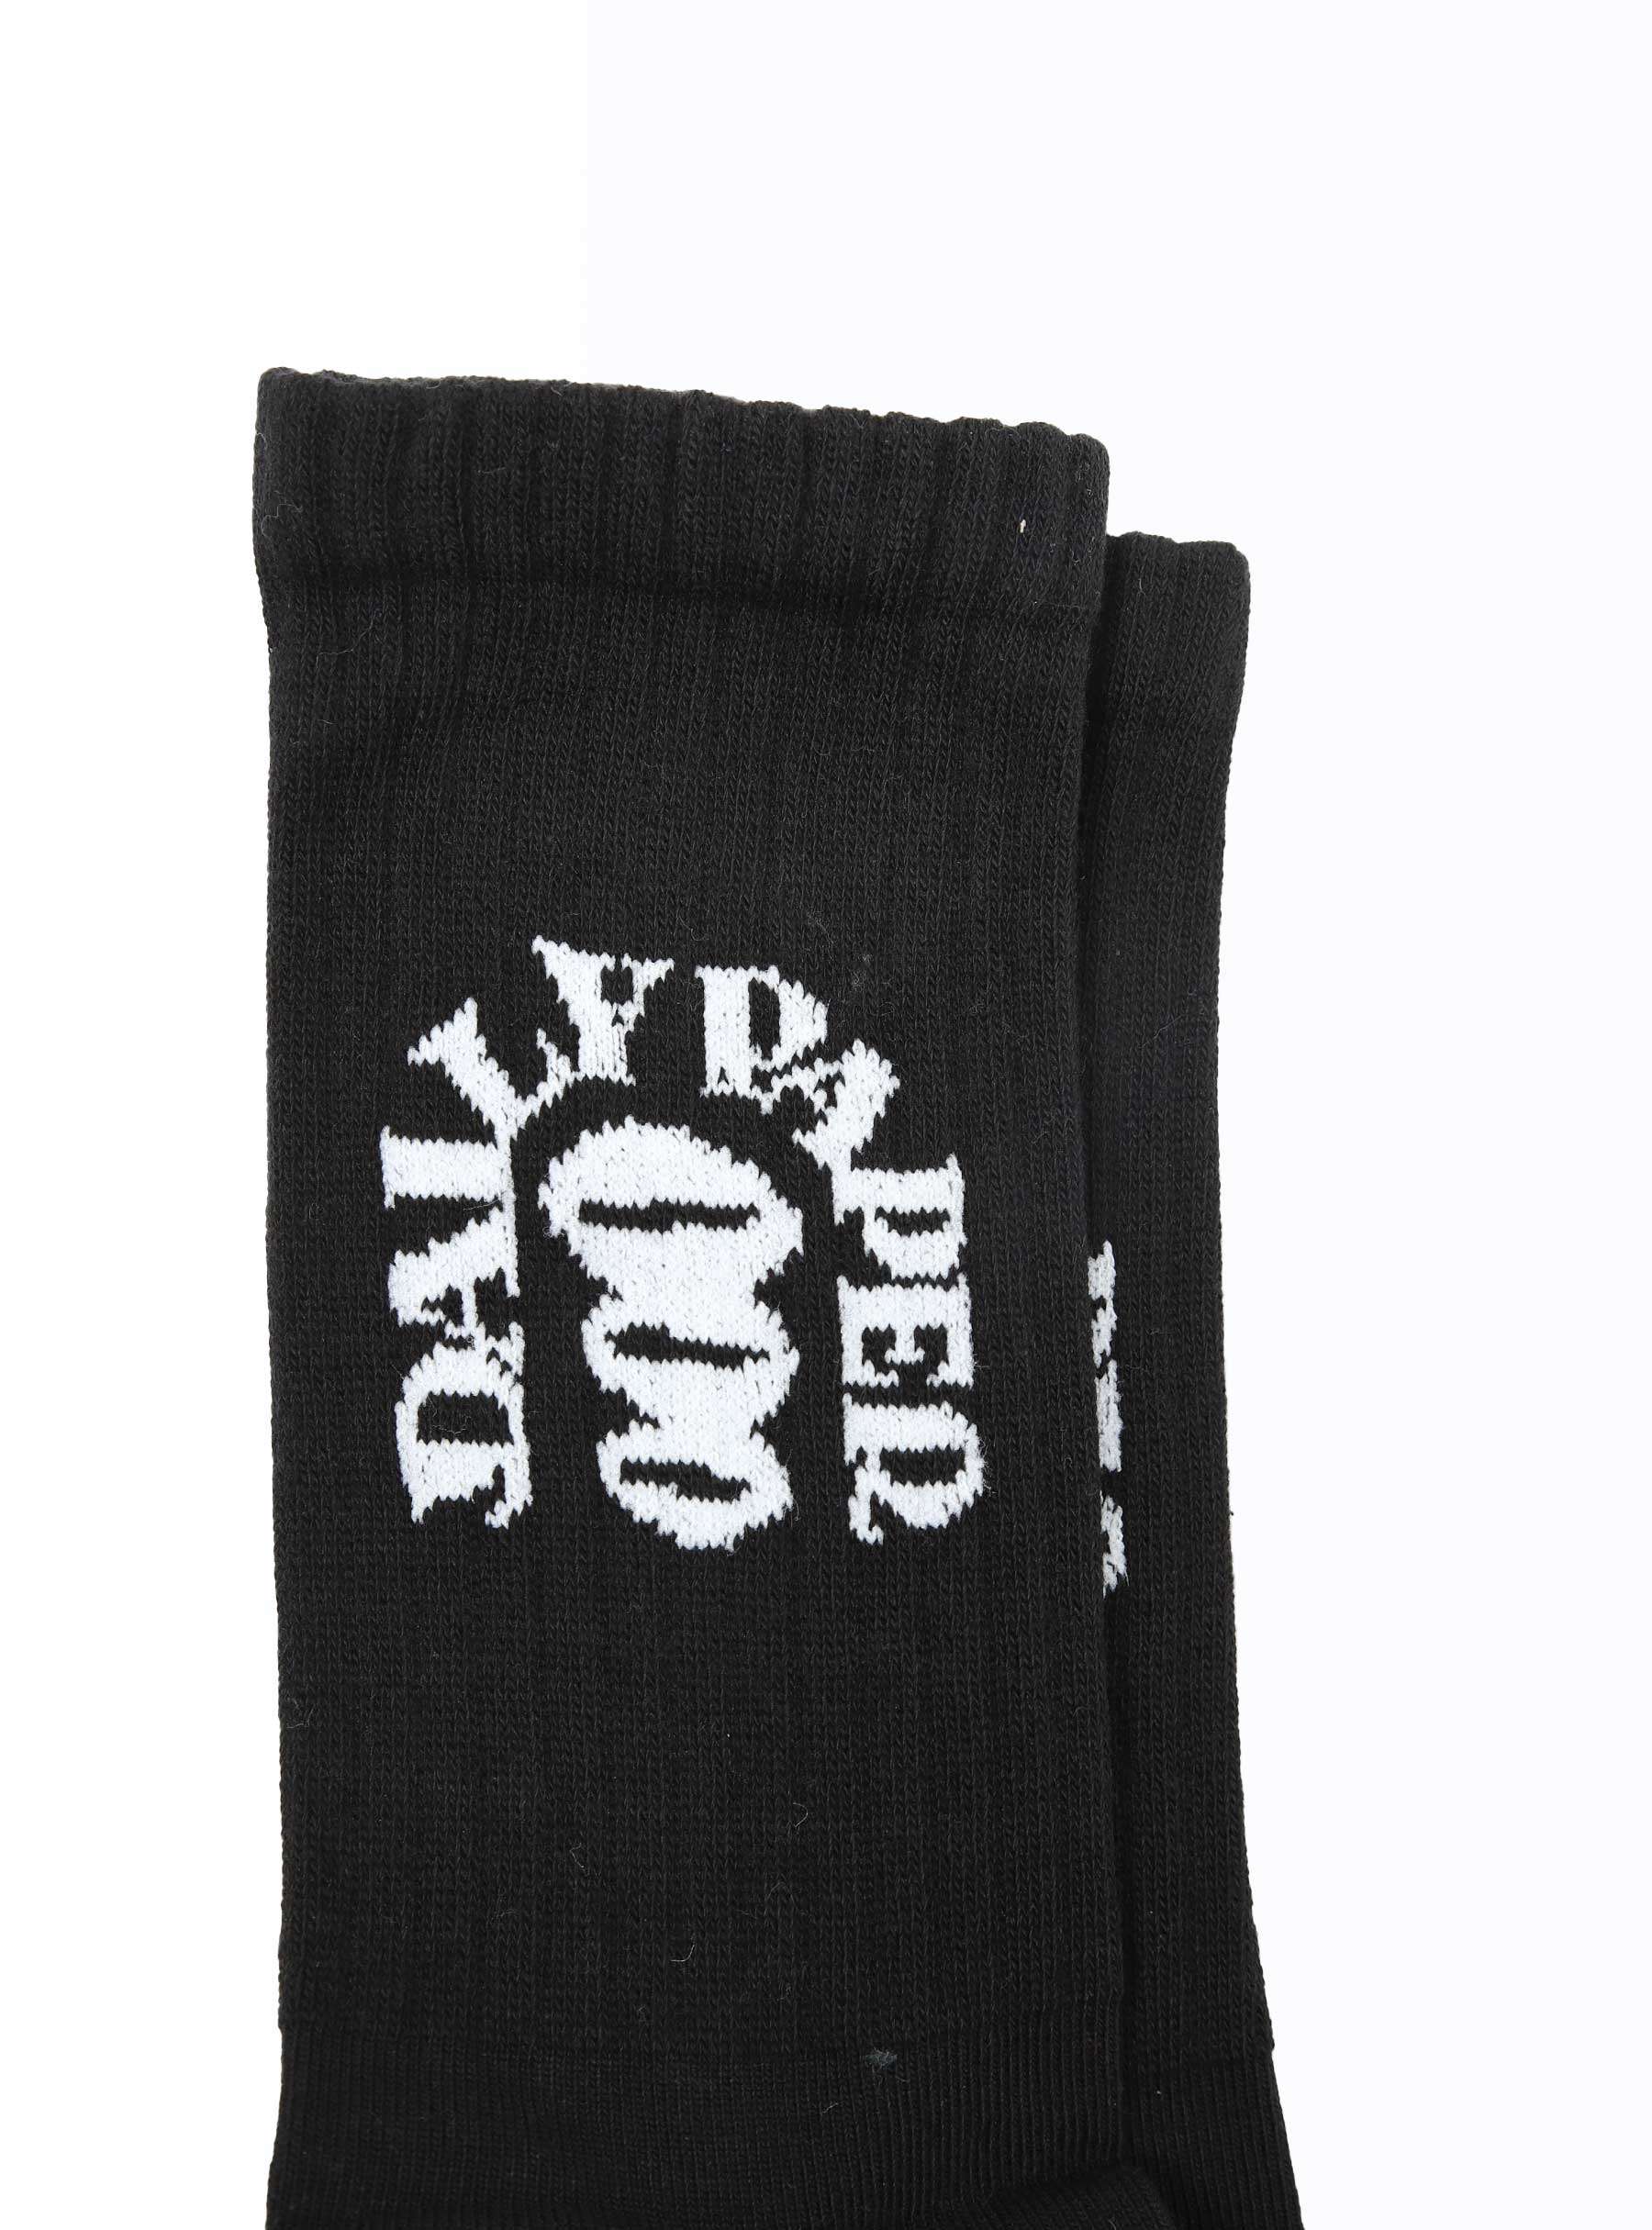 Ruyi Socks Black 2321165